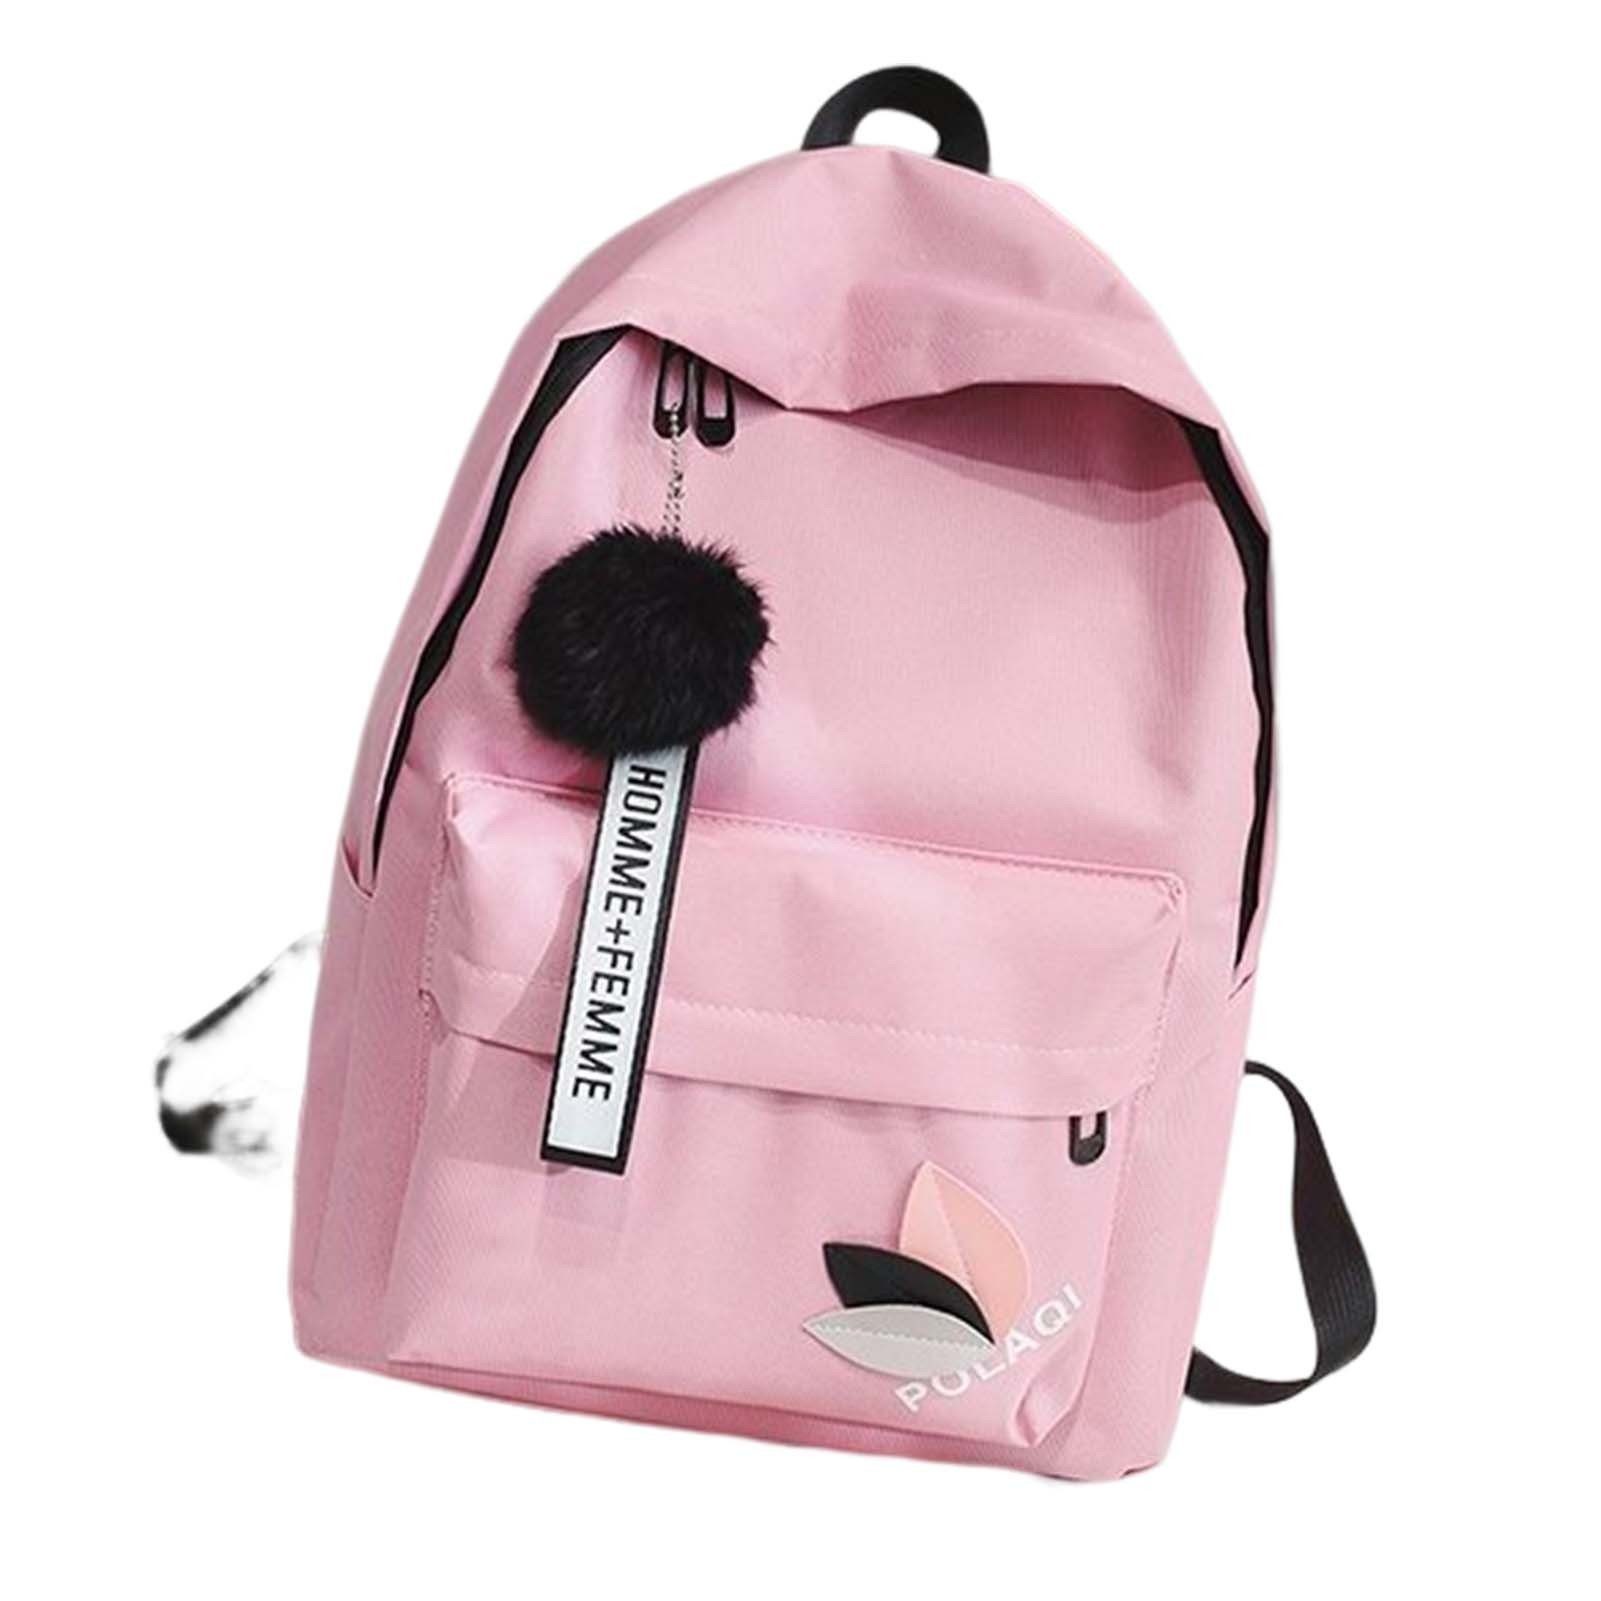 Blusmart Rucksack Rucksack Mit Einfarbigem Druck, Großer Backpack,Freizeitrucksack pink